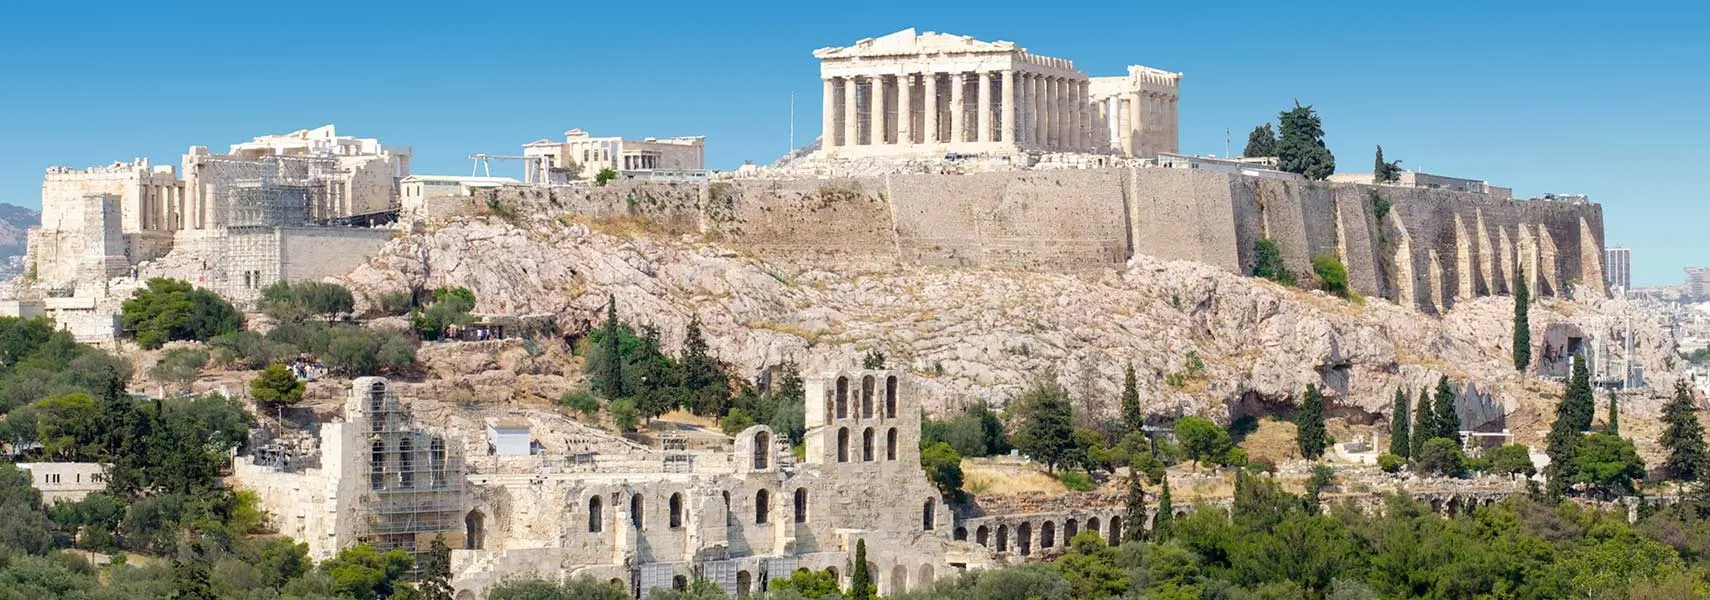 2 始建于公元前580年的雅典卫城